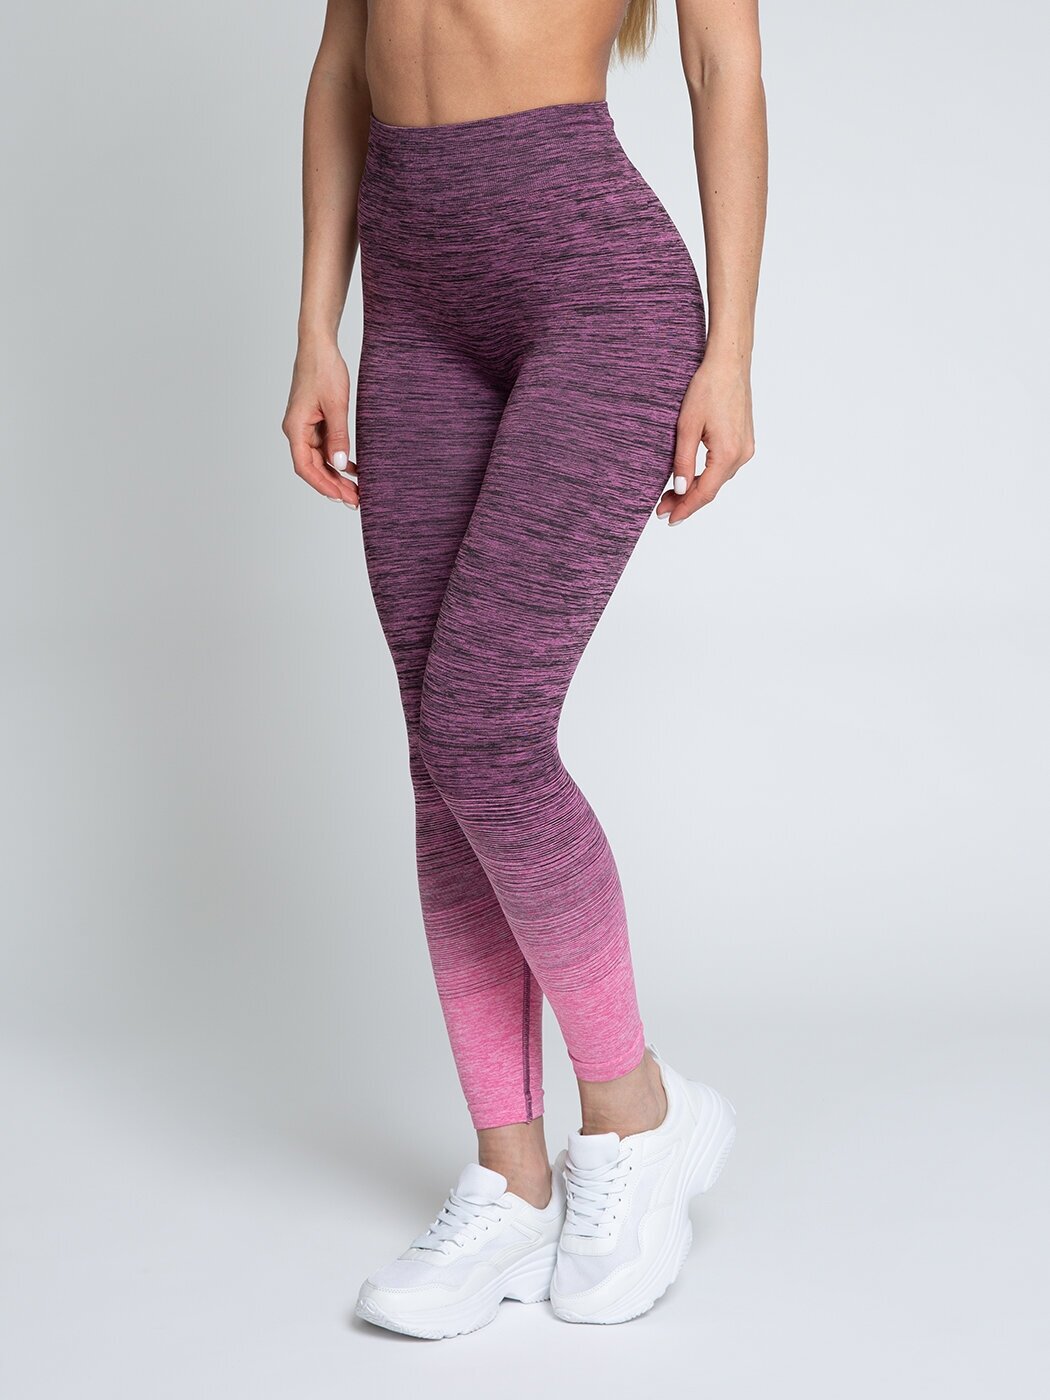 Спортивные женские лосины (леггинсы), тайтсы для фитнеса, Lunarable, размер 46(L), розовый, фиолетовый 